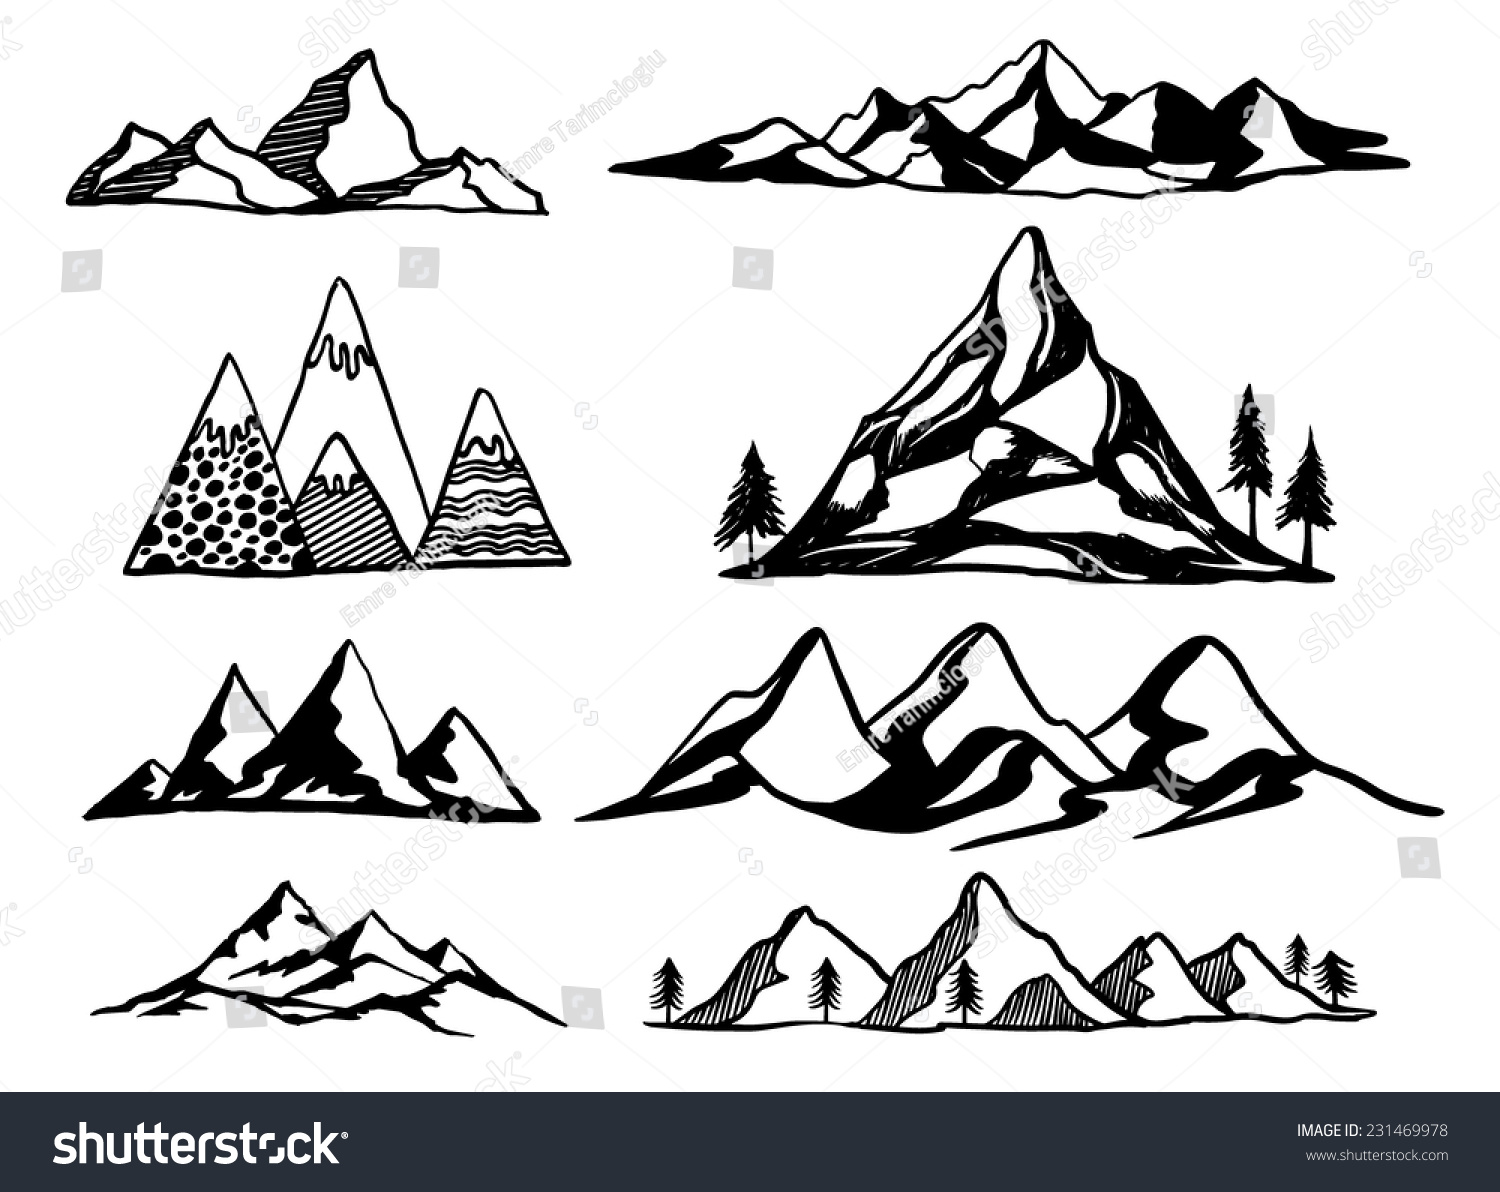 free vector clipart mountain - photo #47